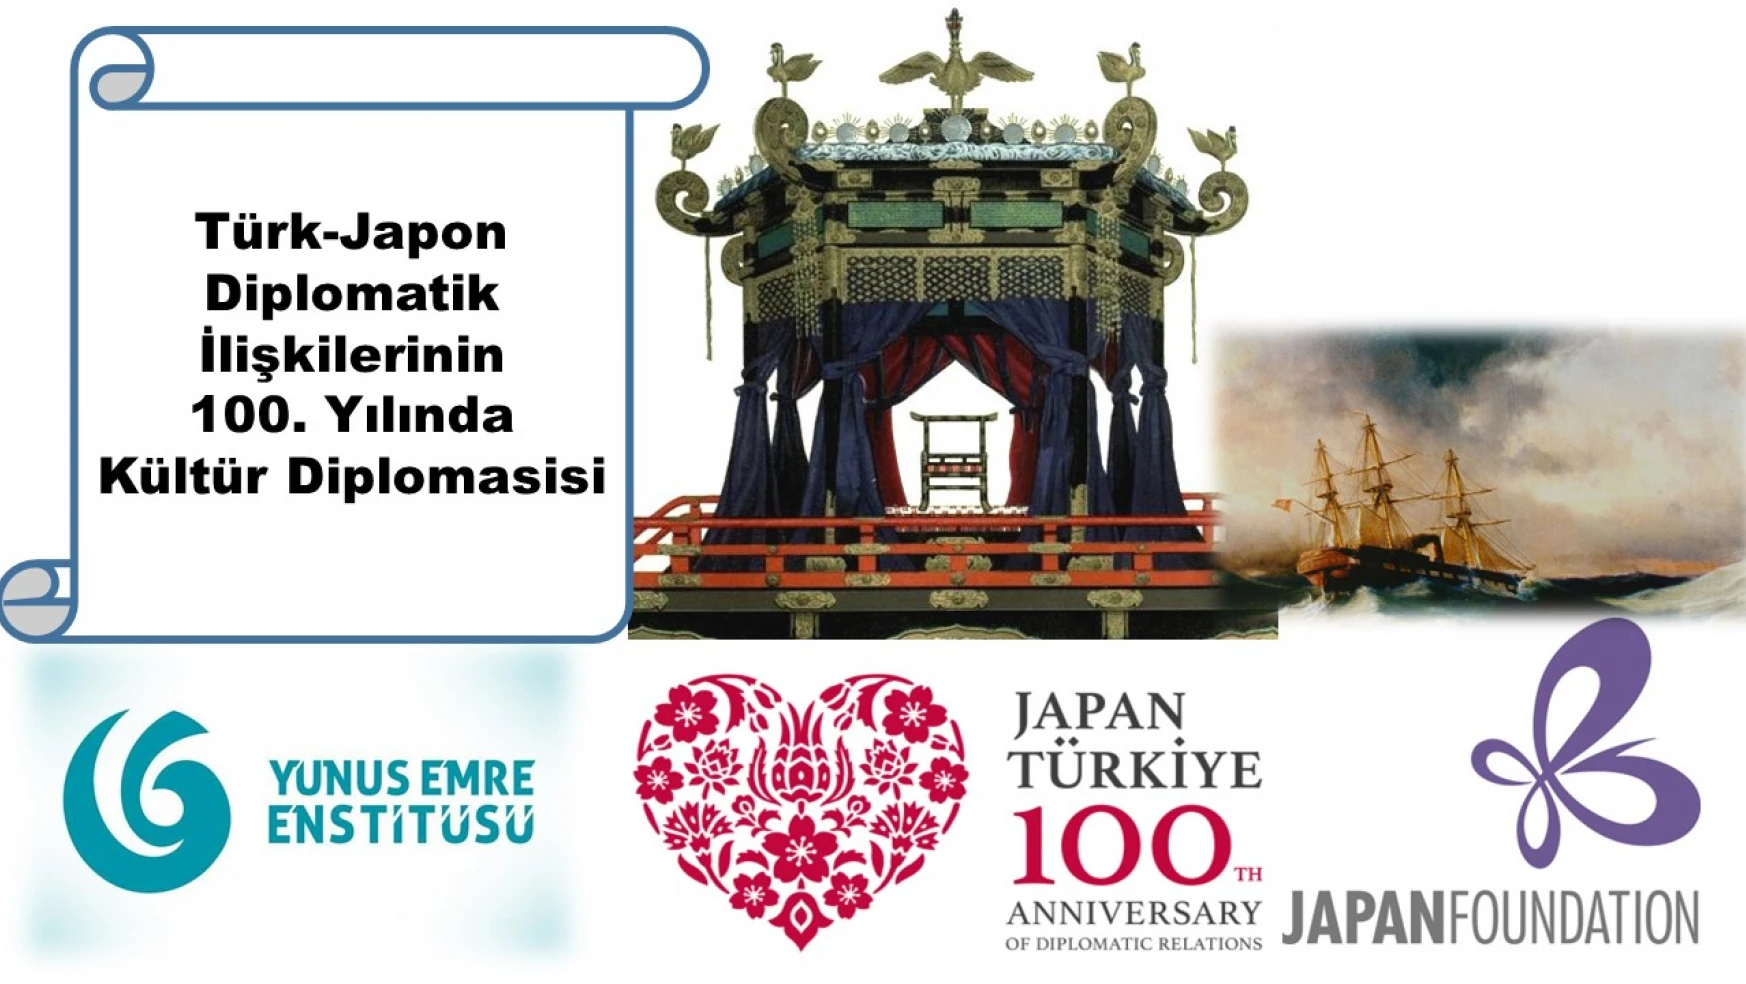 Türk-Japon Diplomatik İlişkilerinin 100. Yılında Kültür Diplomasisi